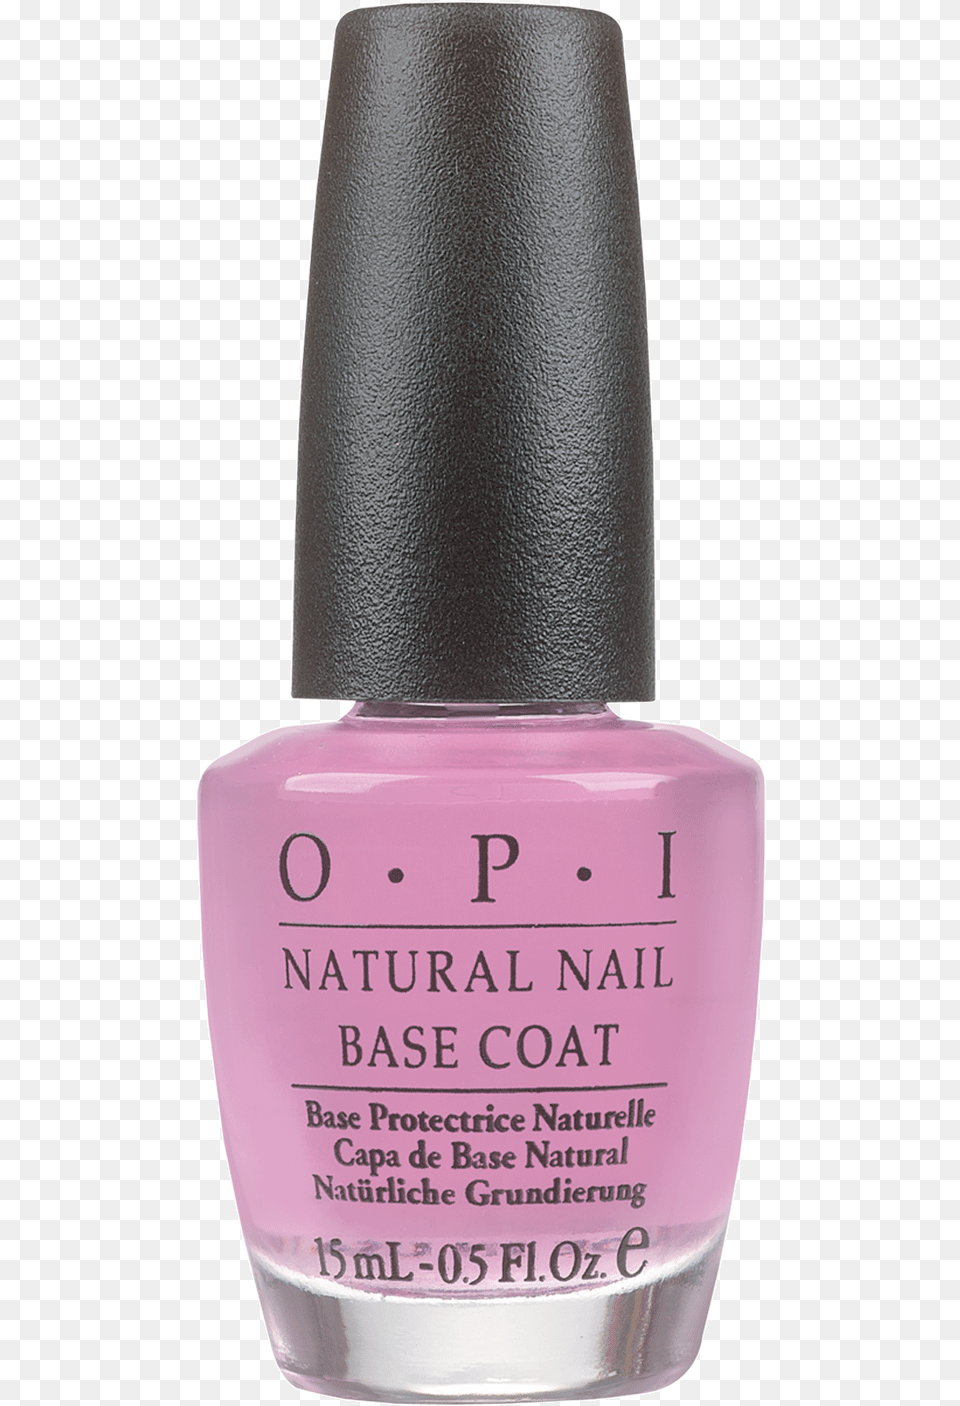 Natural Nail Base Coat Opi Pink Base Coat, Cosmetics, Bottle, Perfume, Nail Polish Png Image